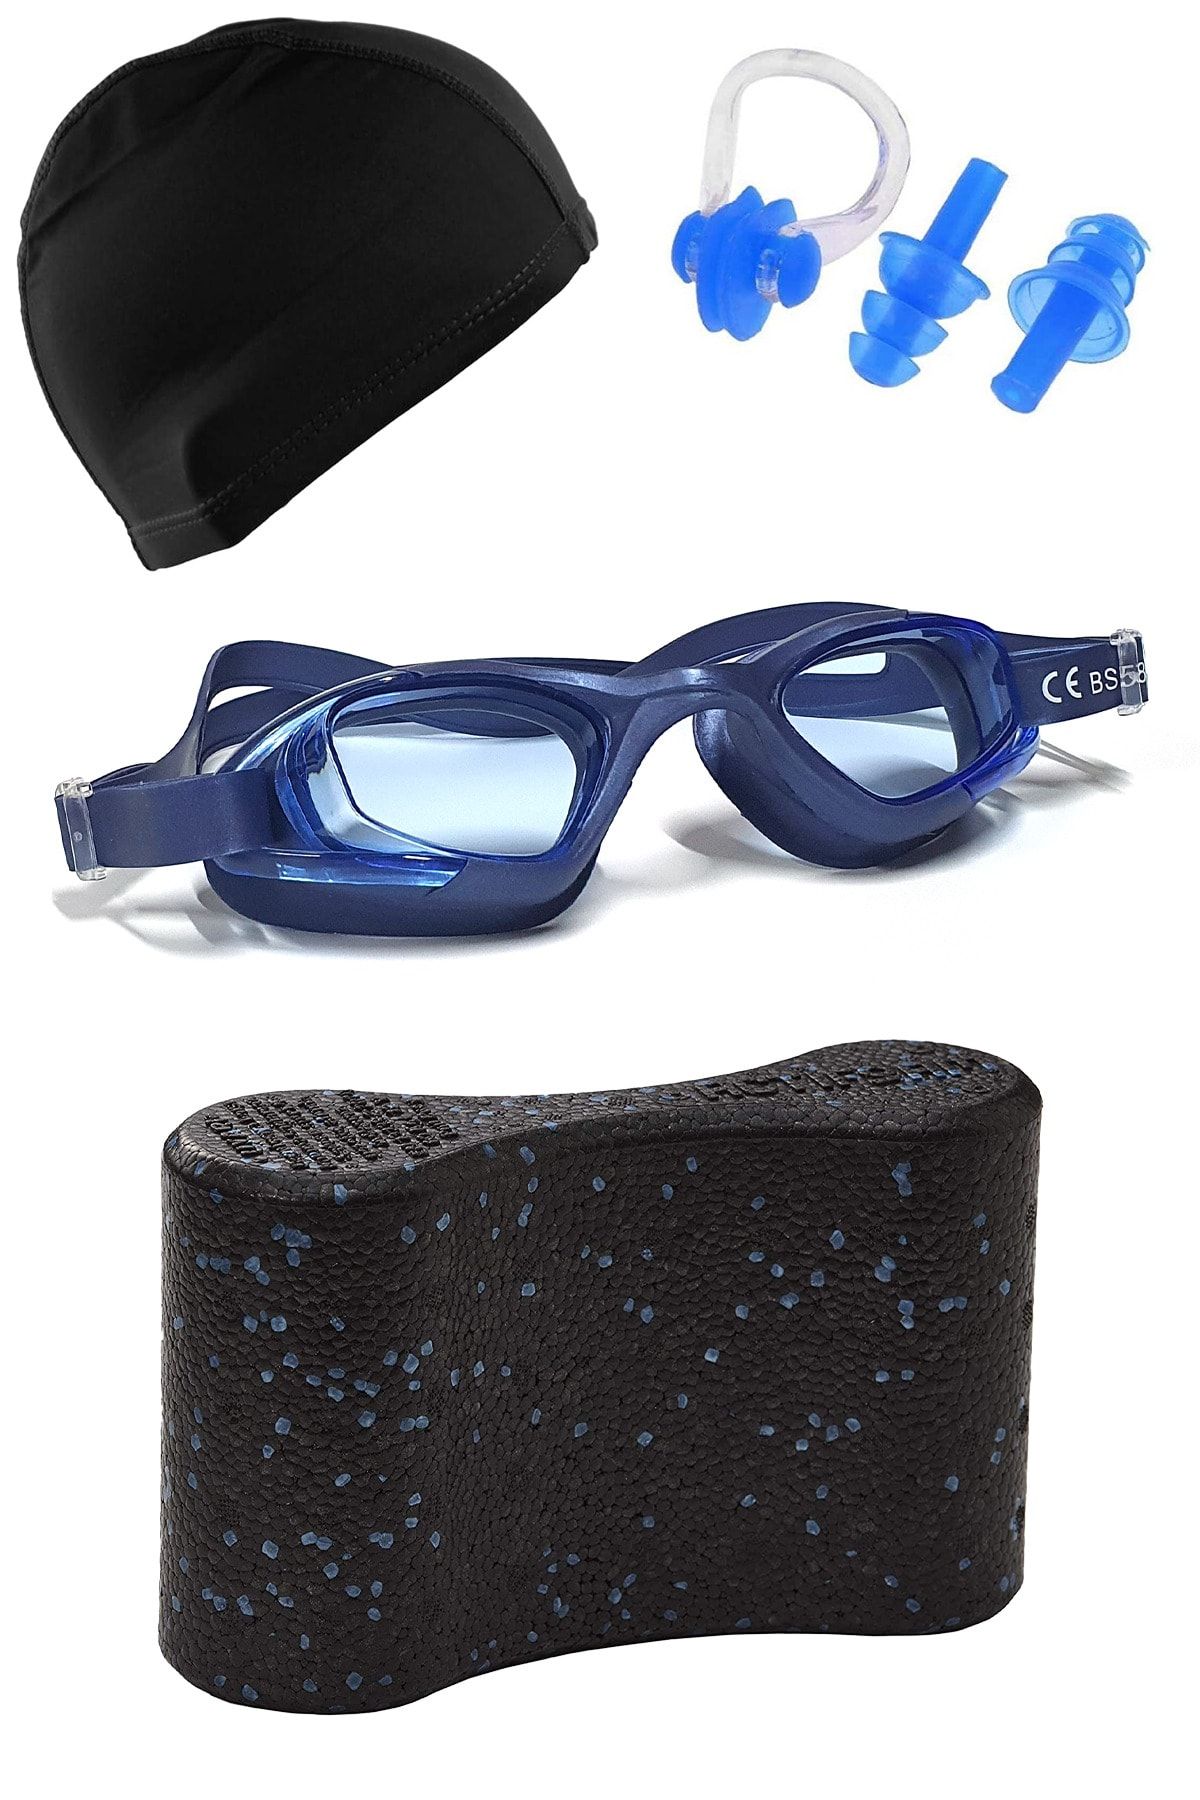 Tosima Yetişkin Silikon Yüzücü Gözlüğü Likra Bone Kulak Tıkacı Burun Klipsi Ve Pull Buoy Seti Full Set